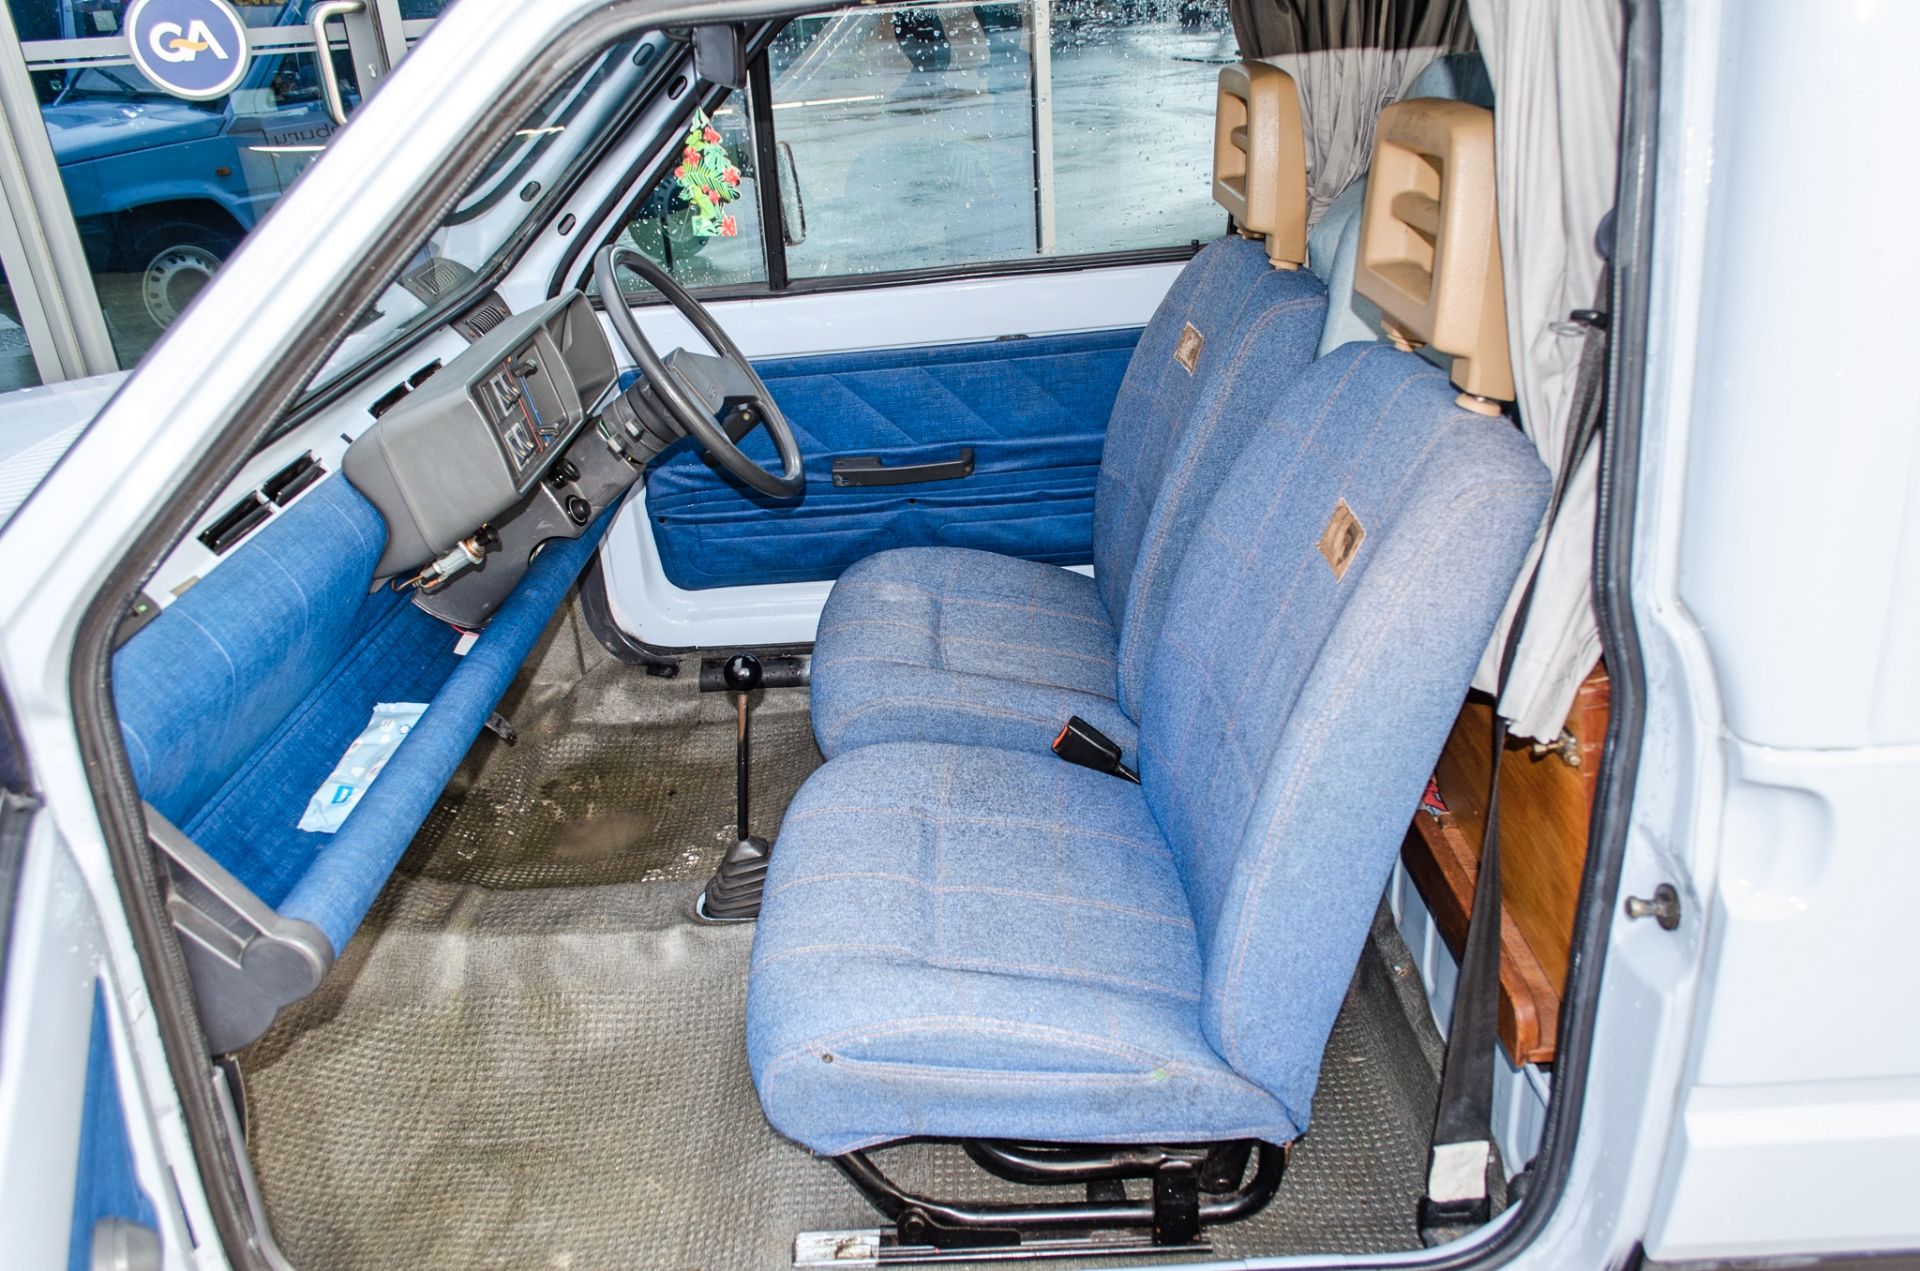 1990 Seat Terra 903cc 2 berth Danbury Motor Caravan - Image 37 of 53